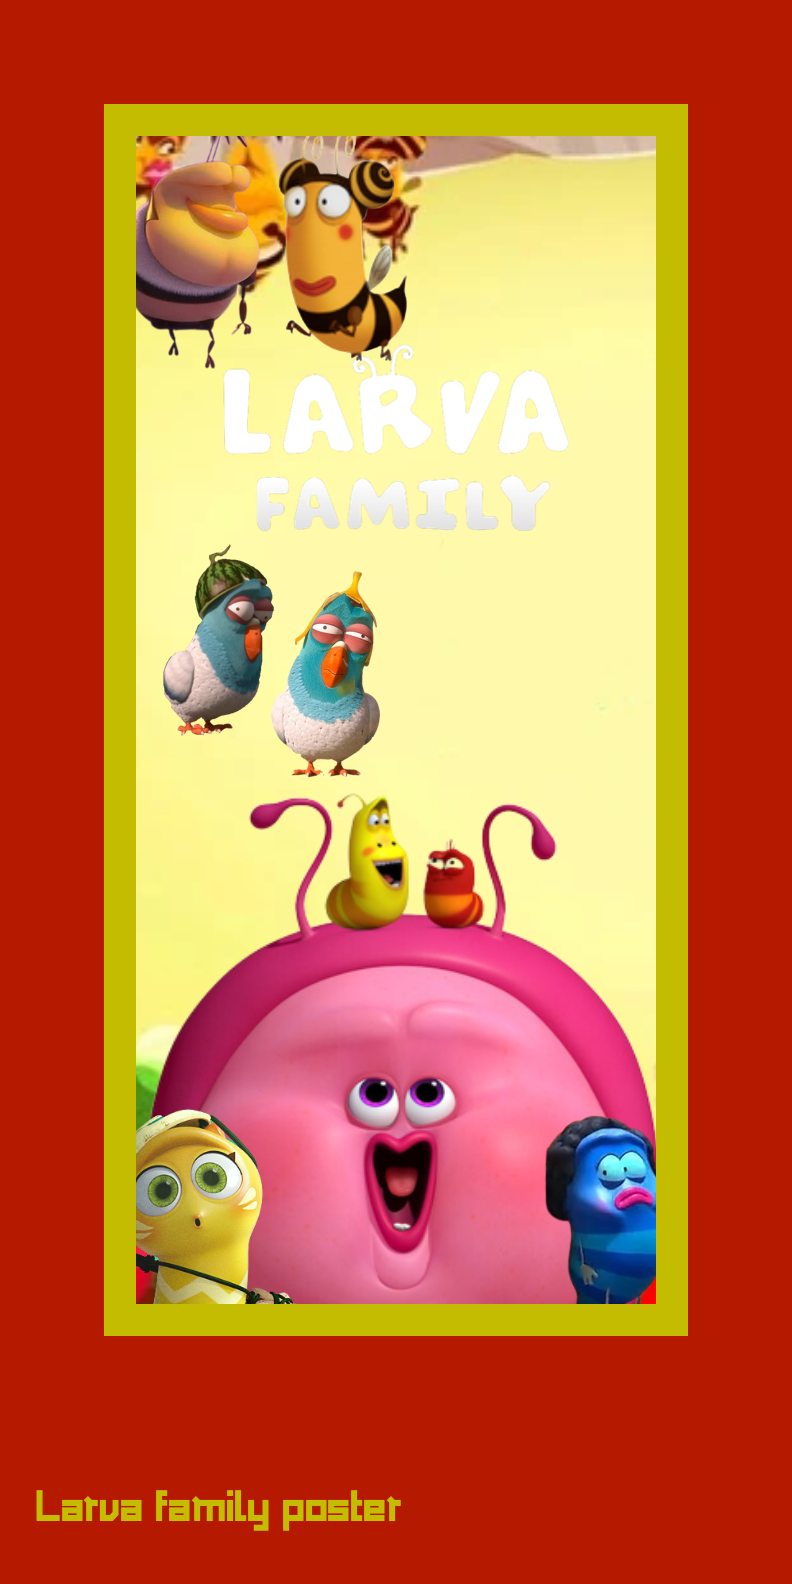 Larva family poster